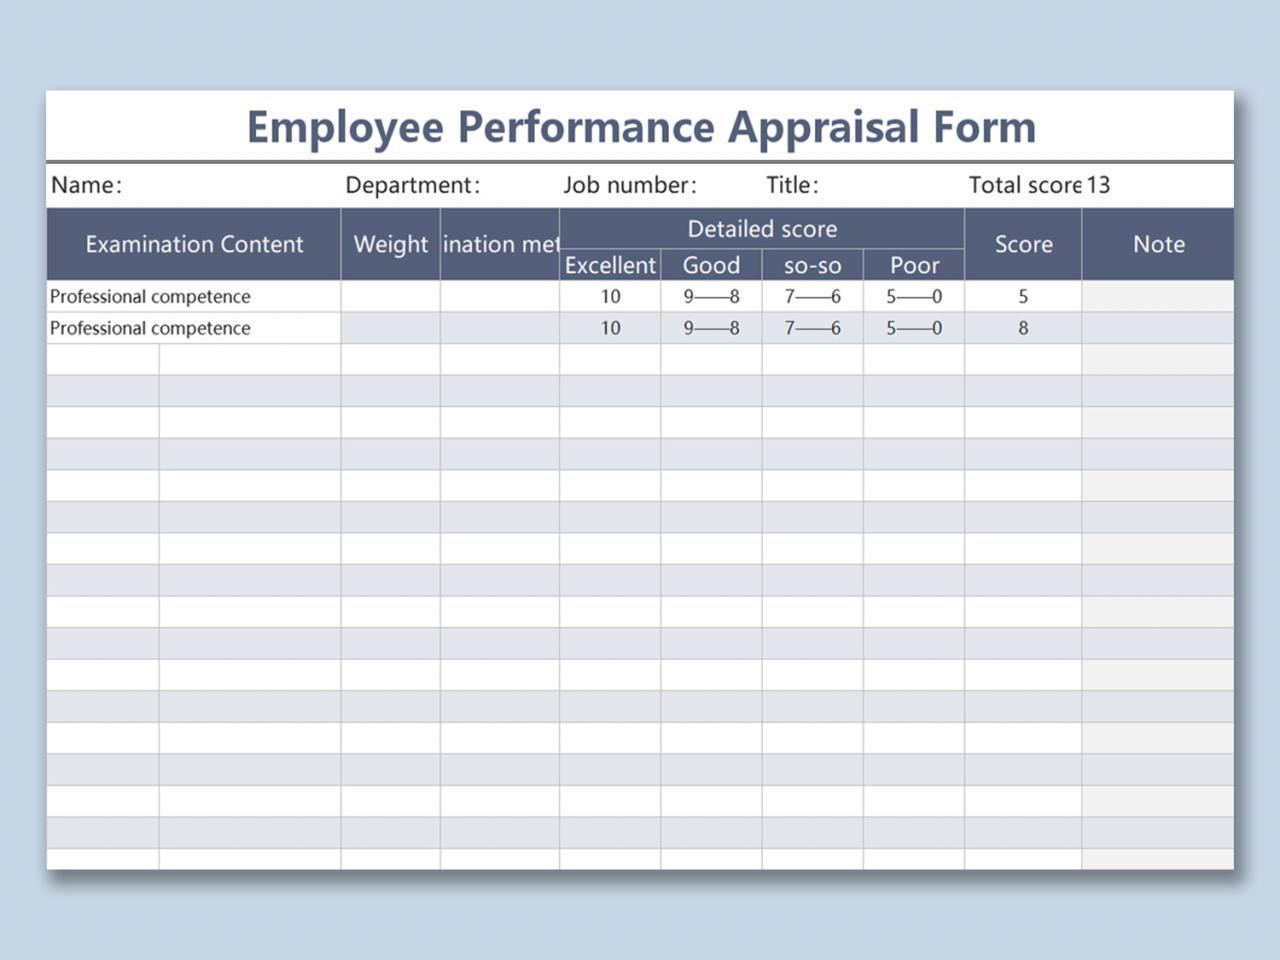 Appraisal report of an employee